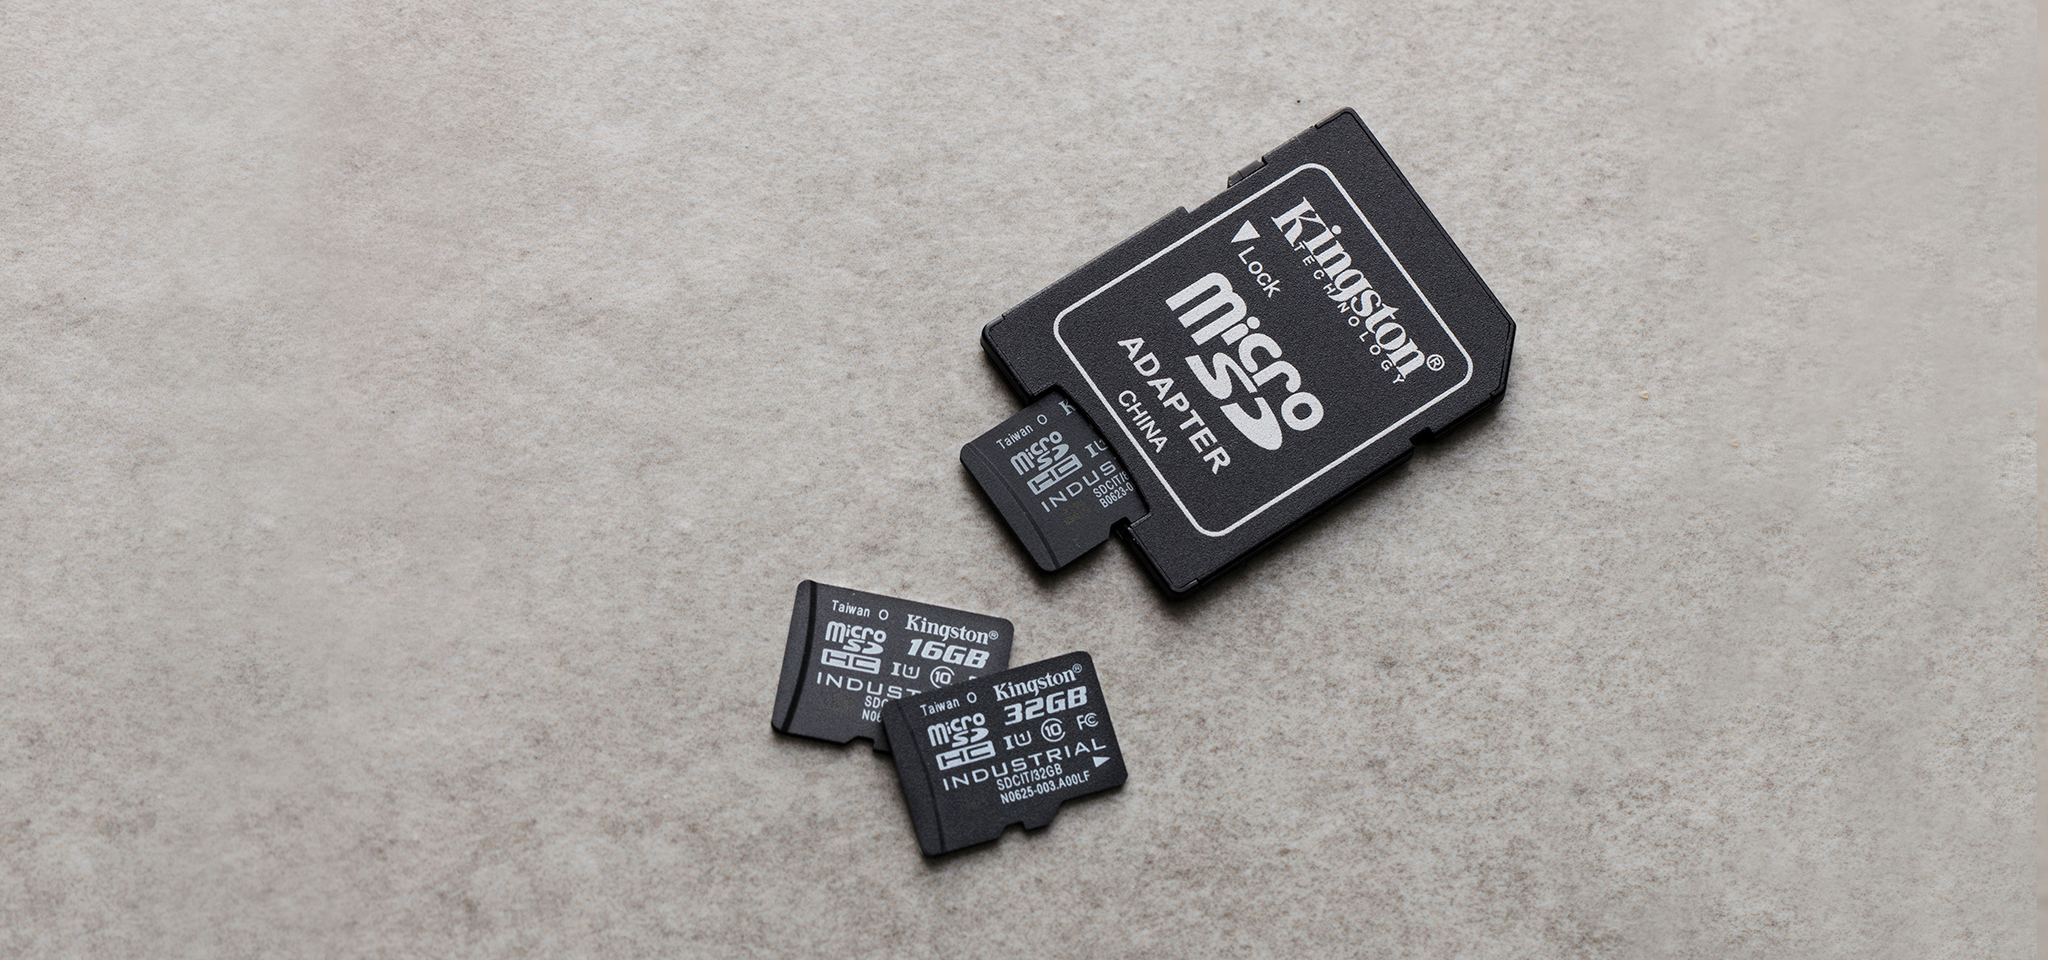 厳しい環境に耐えられる産業用 Microsd Uhs I フラッシュ メモリ カード Kingston Technology